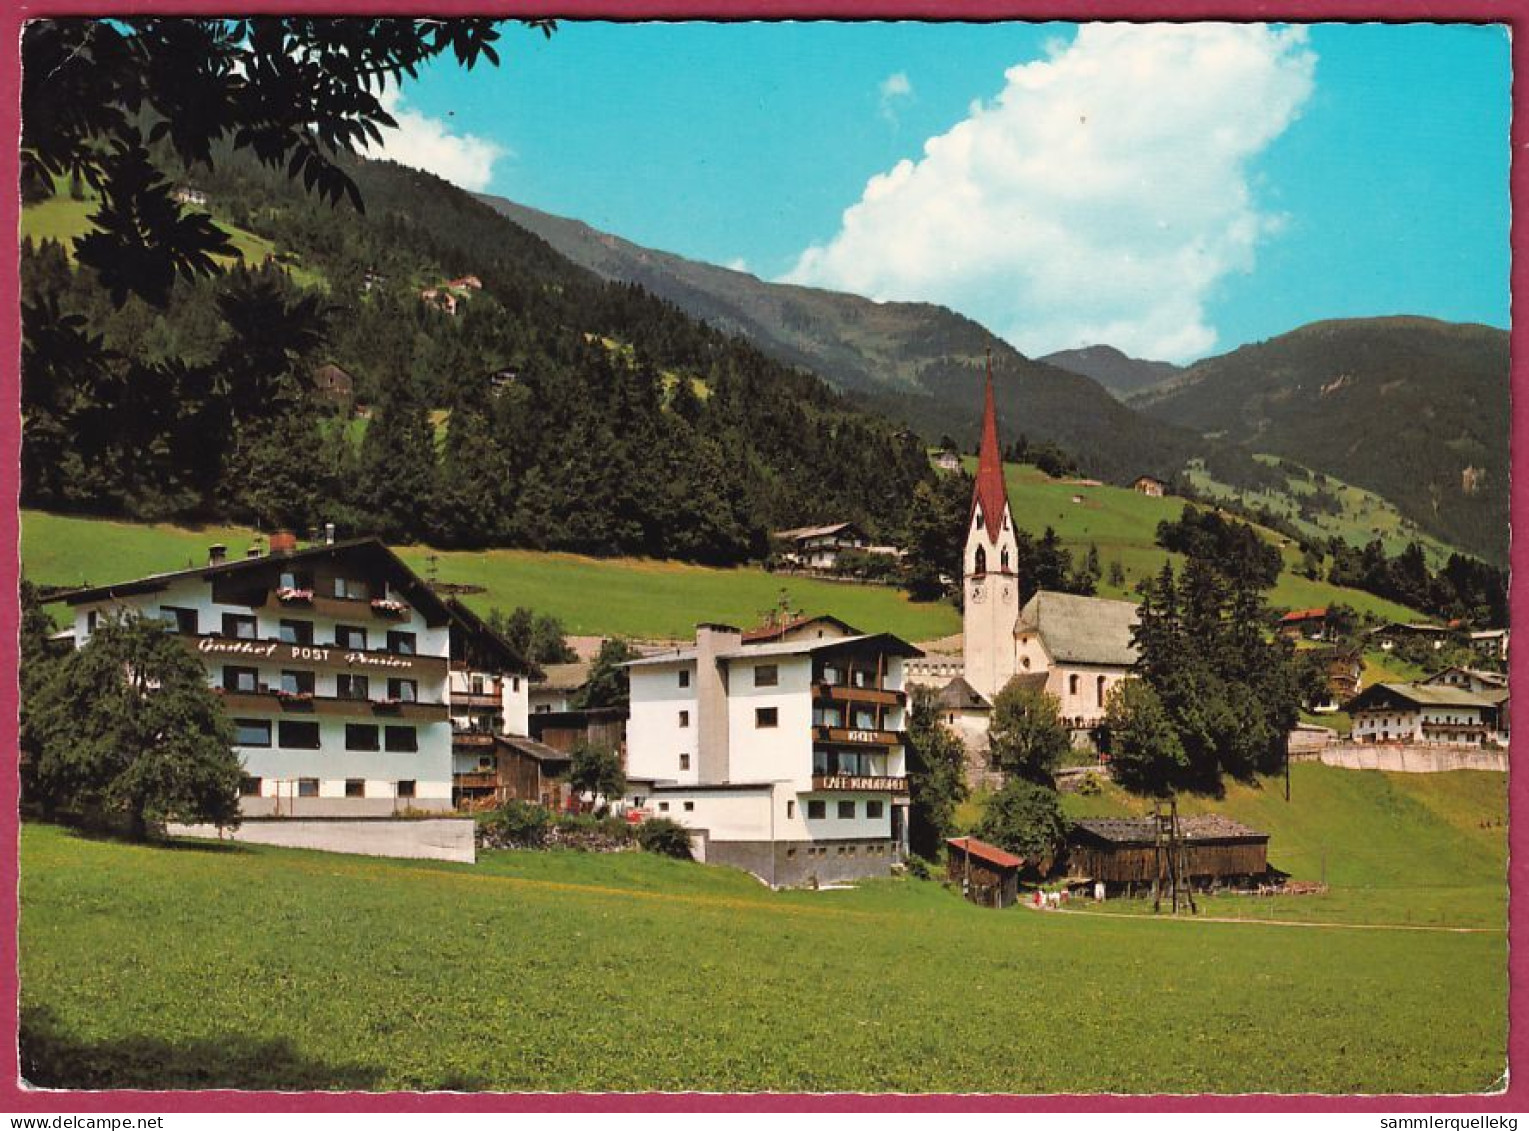 AK: Hippach Im Zillertal, Gelaufen 20. 6. 1977 (Nr. 4794) - Zillertal